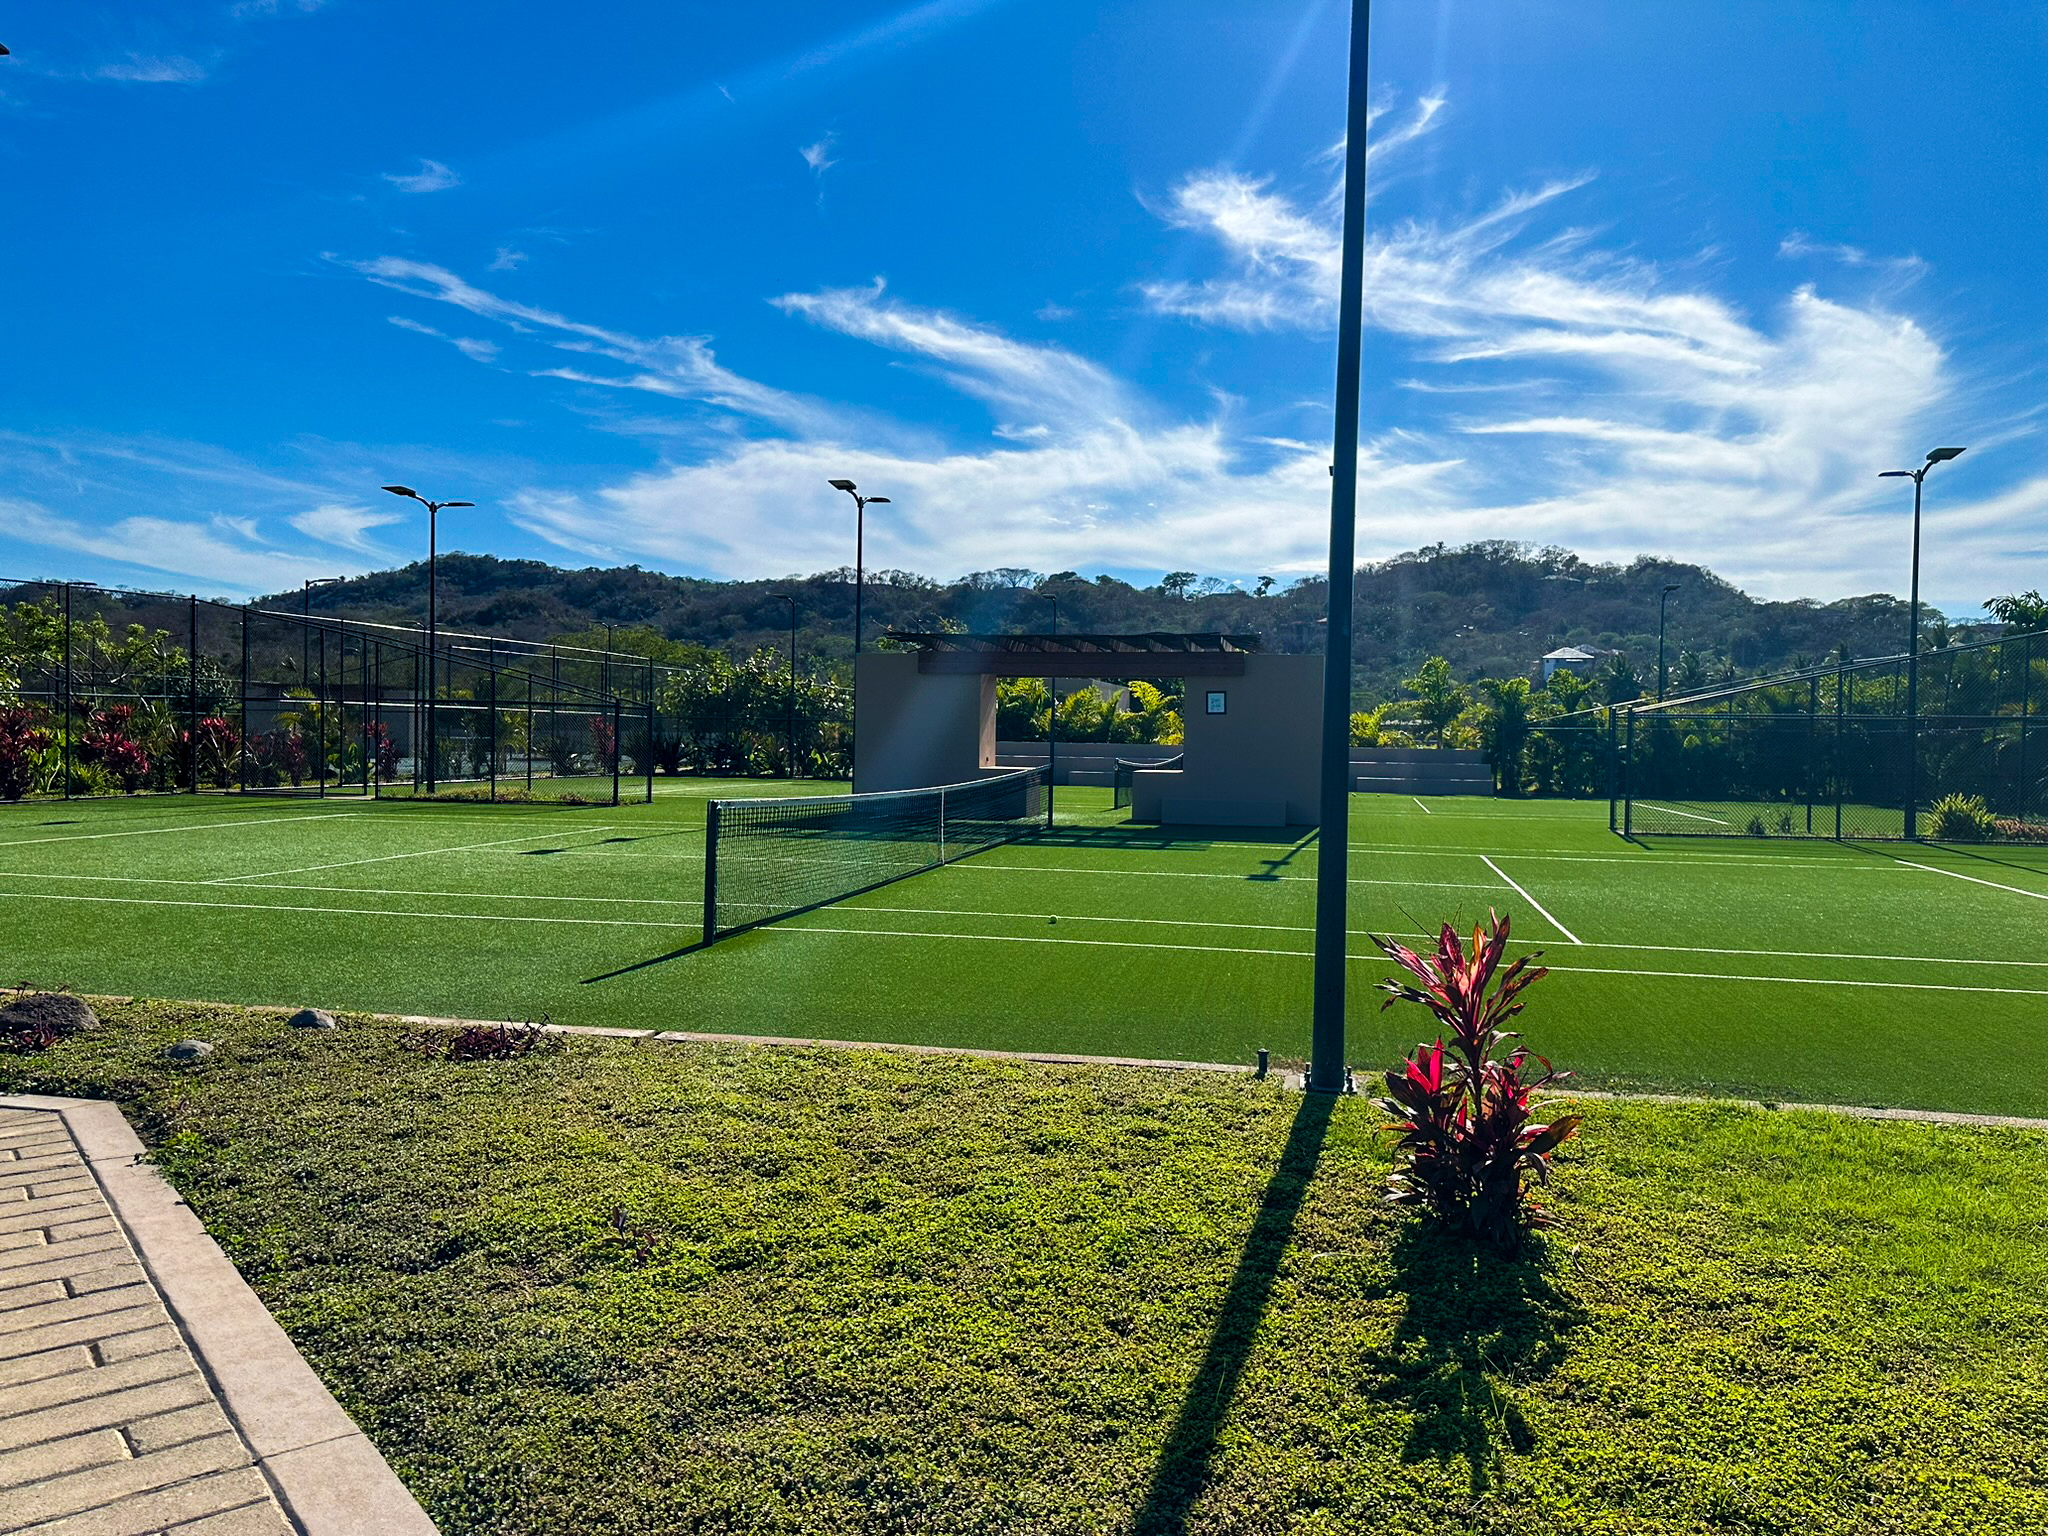 Mandarina grass tennis court